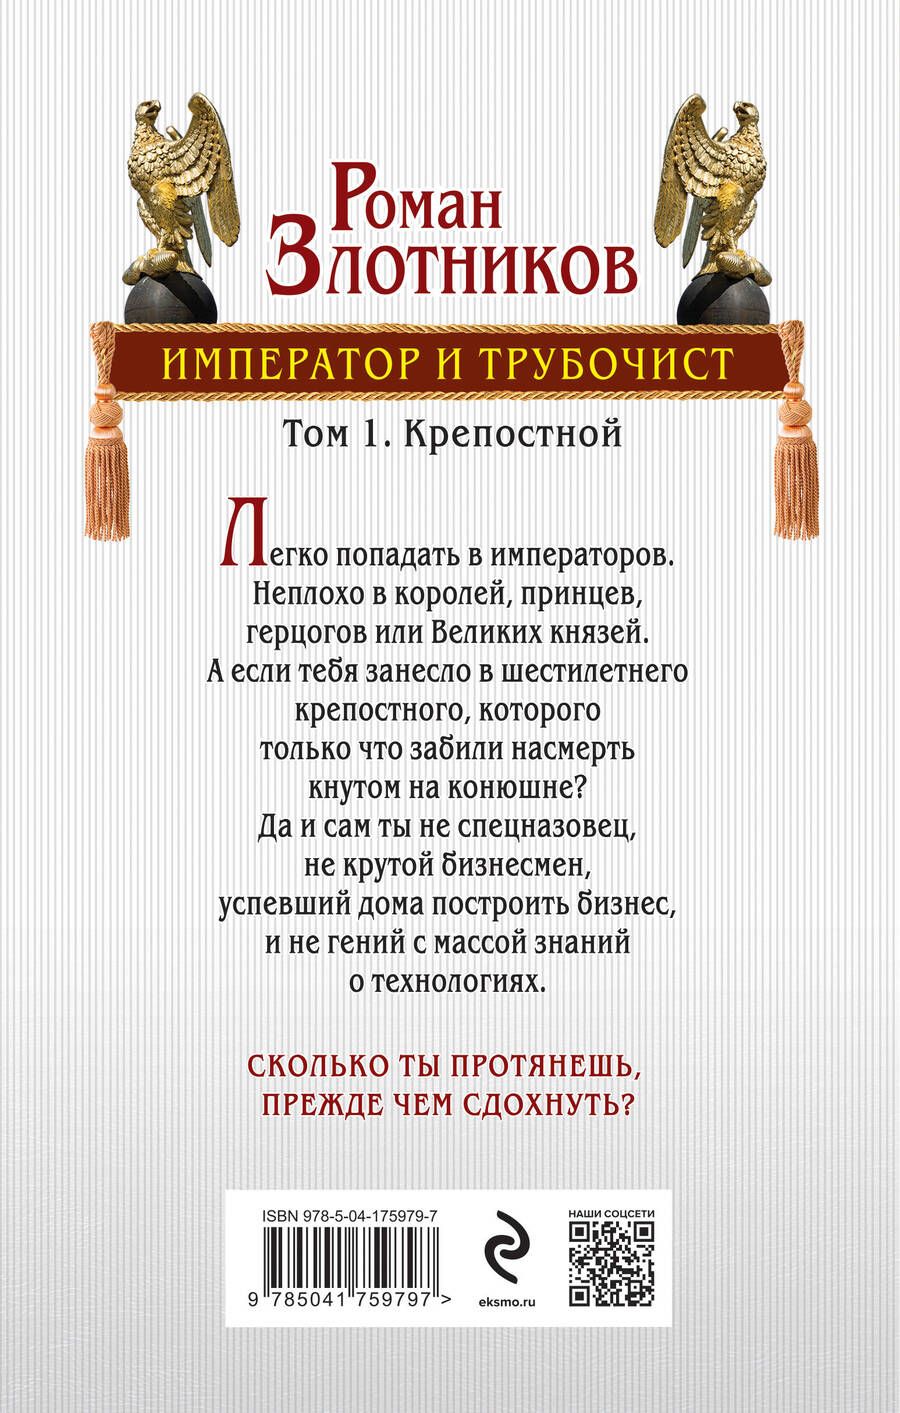 Обложка книги "Роман Злотников: Император и трубочист. Том 1. Крепостной"